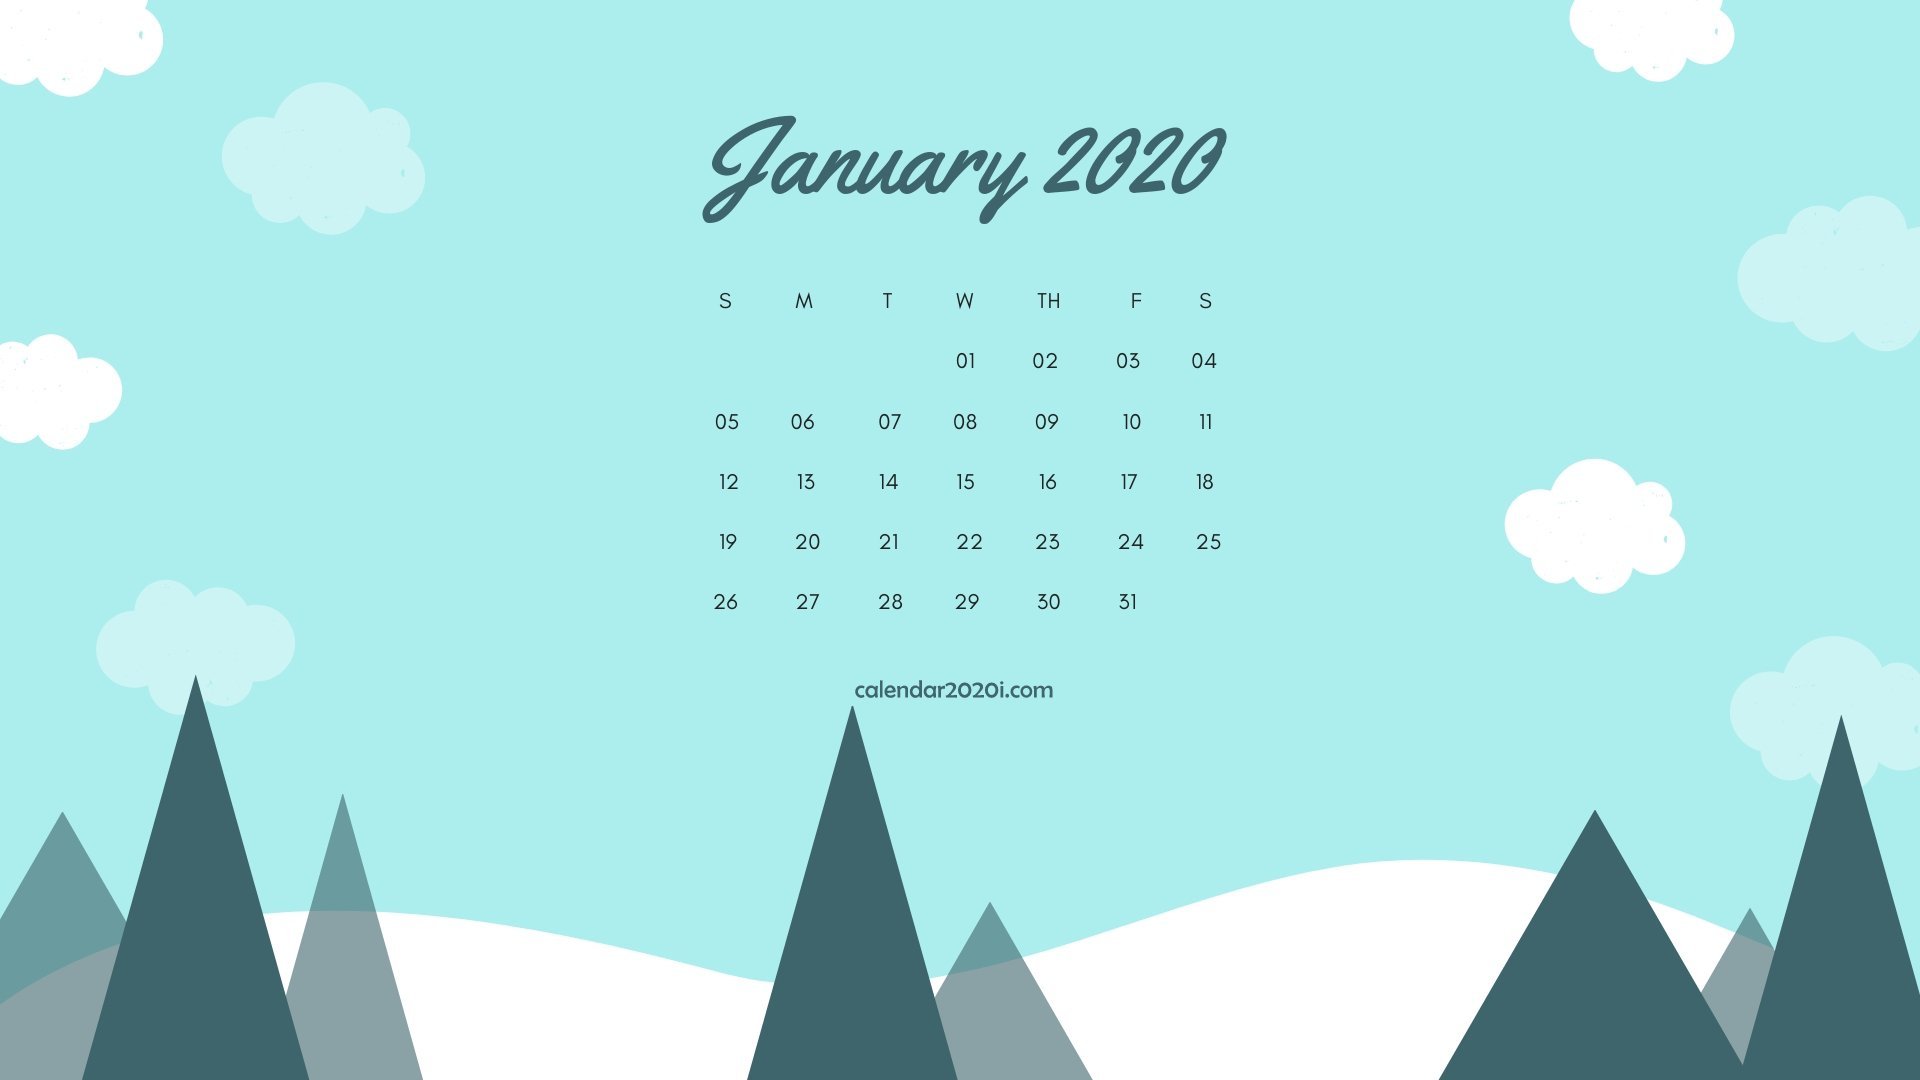 2020 Calendar Monthly HD Wallpapers Calendar 2020 1920x1080